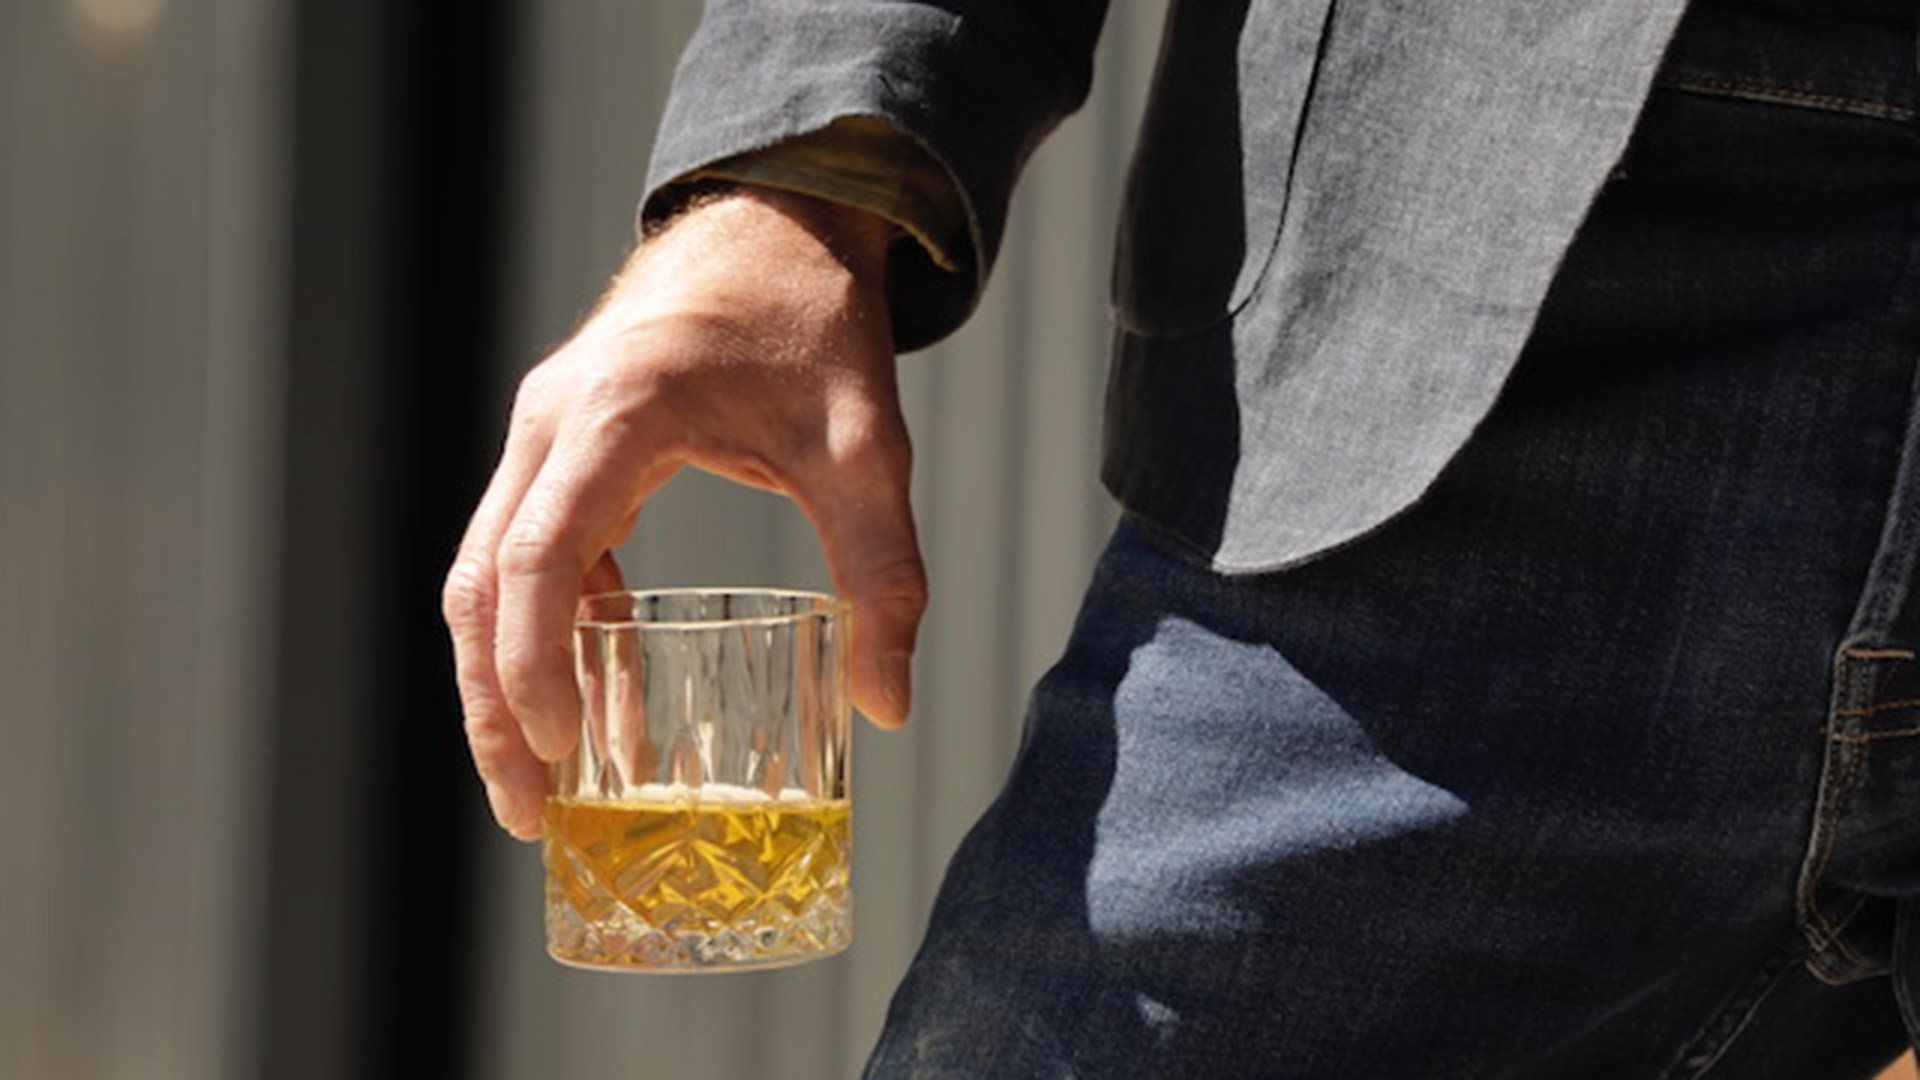 “El whisky tiene una historia fascinante, está en el ADN de naciones enteras e involucra técnicas muy diferentes" (Foto: Martín Traynor)